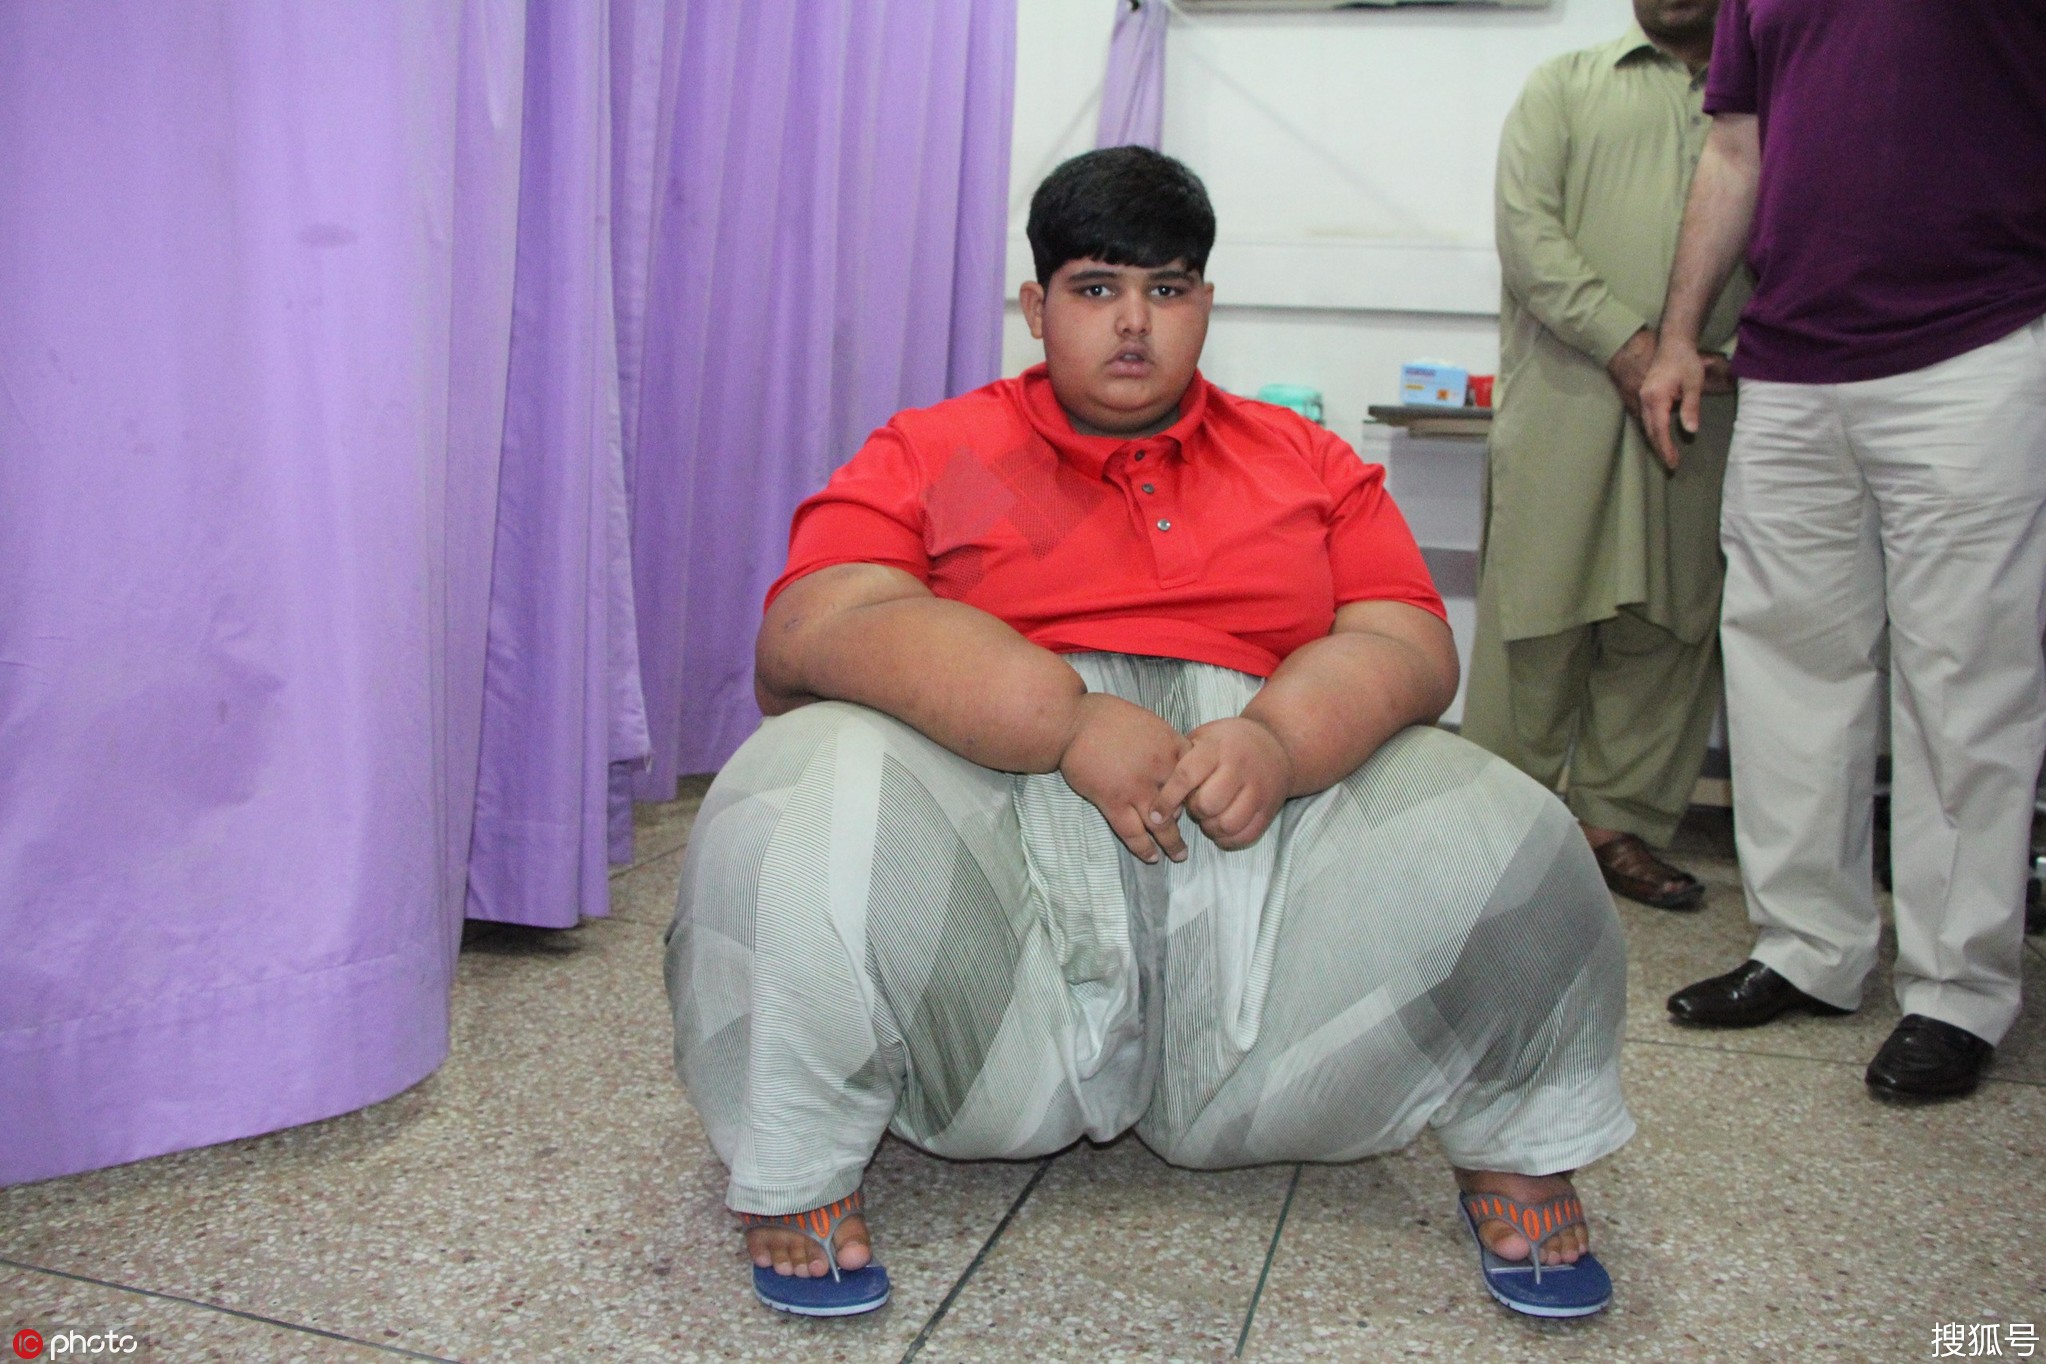 巴基斯坦小孩成最胖男孩 体重近400斤一次吃四人量